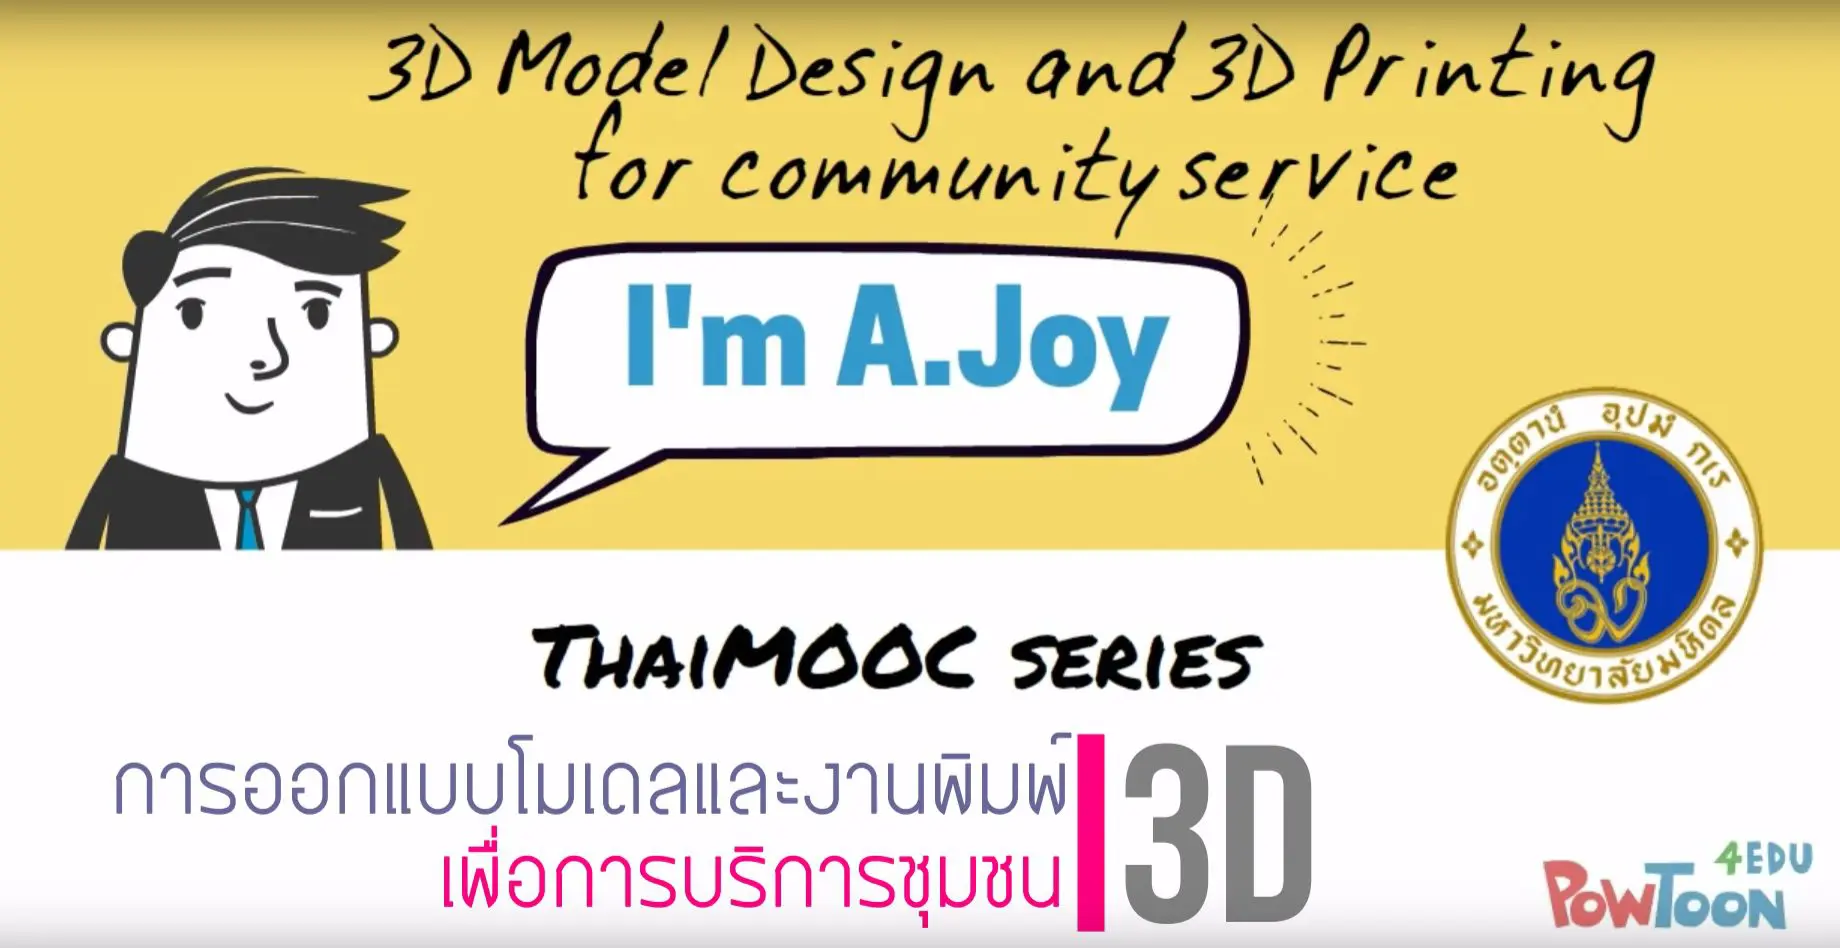 การออกแบบโมเดลและงานพิมพ์ 3D เพื่อการบริการชุมชน | 3D Model design & printing for community service